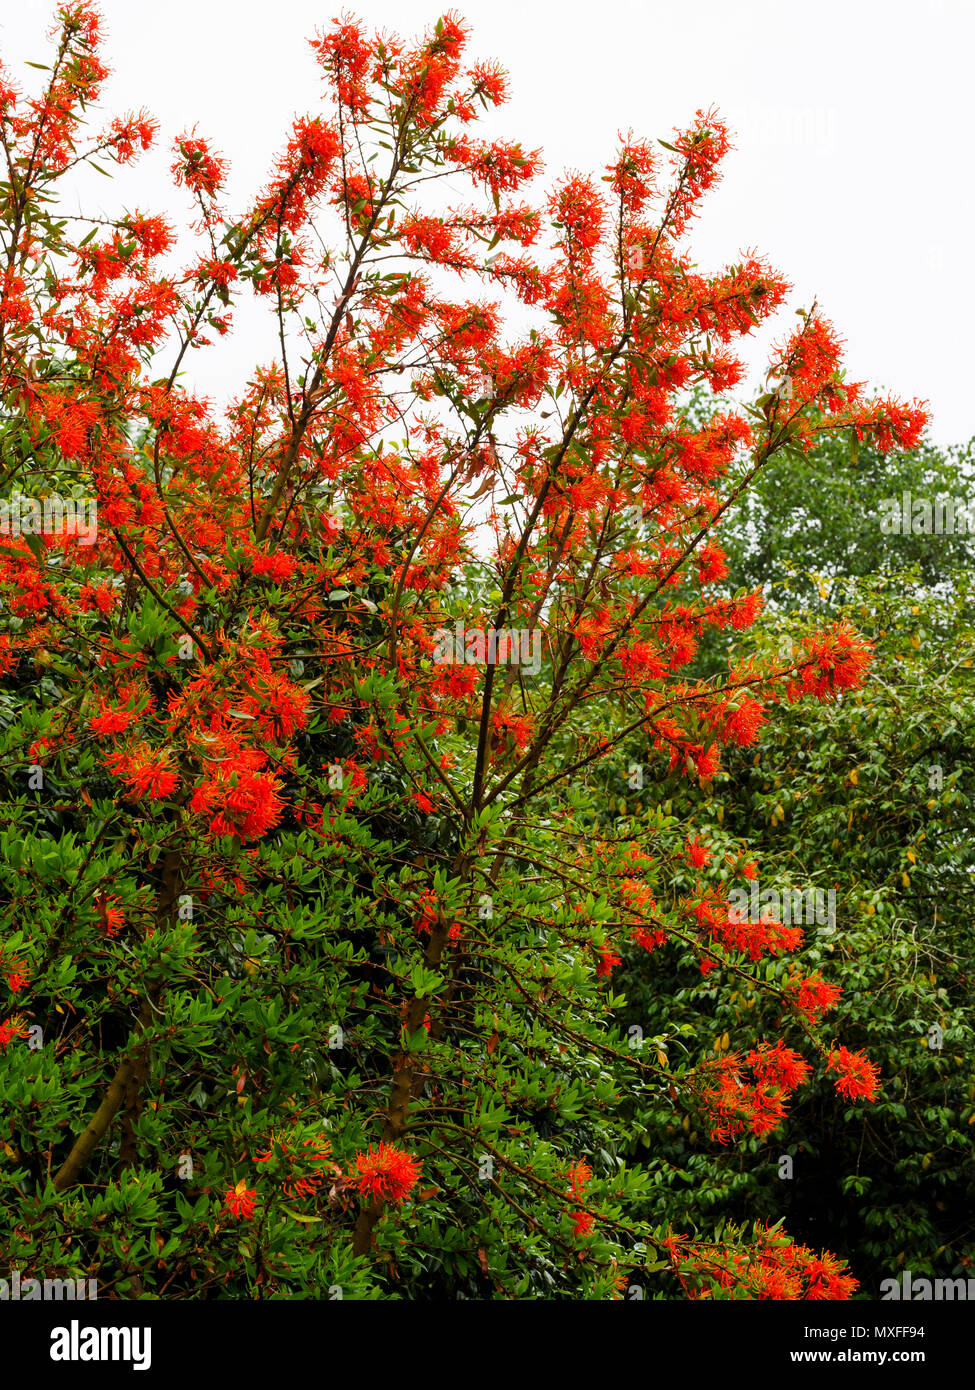 Leuchtend rote Blüten der Chilenischen Flame Tree, Embothrium coccineum, Blüte im Frühsommer Stockfoto